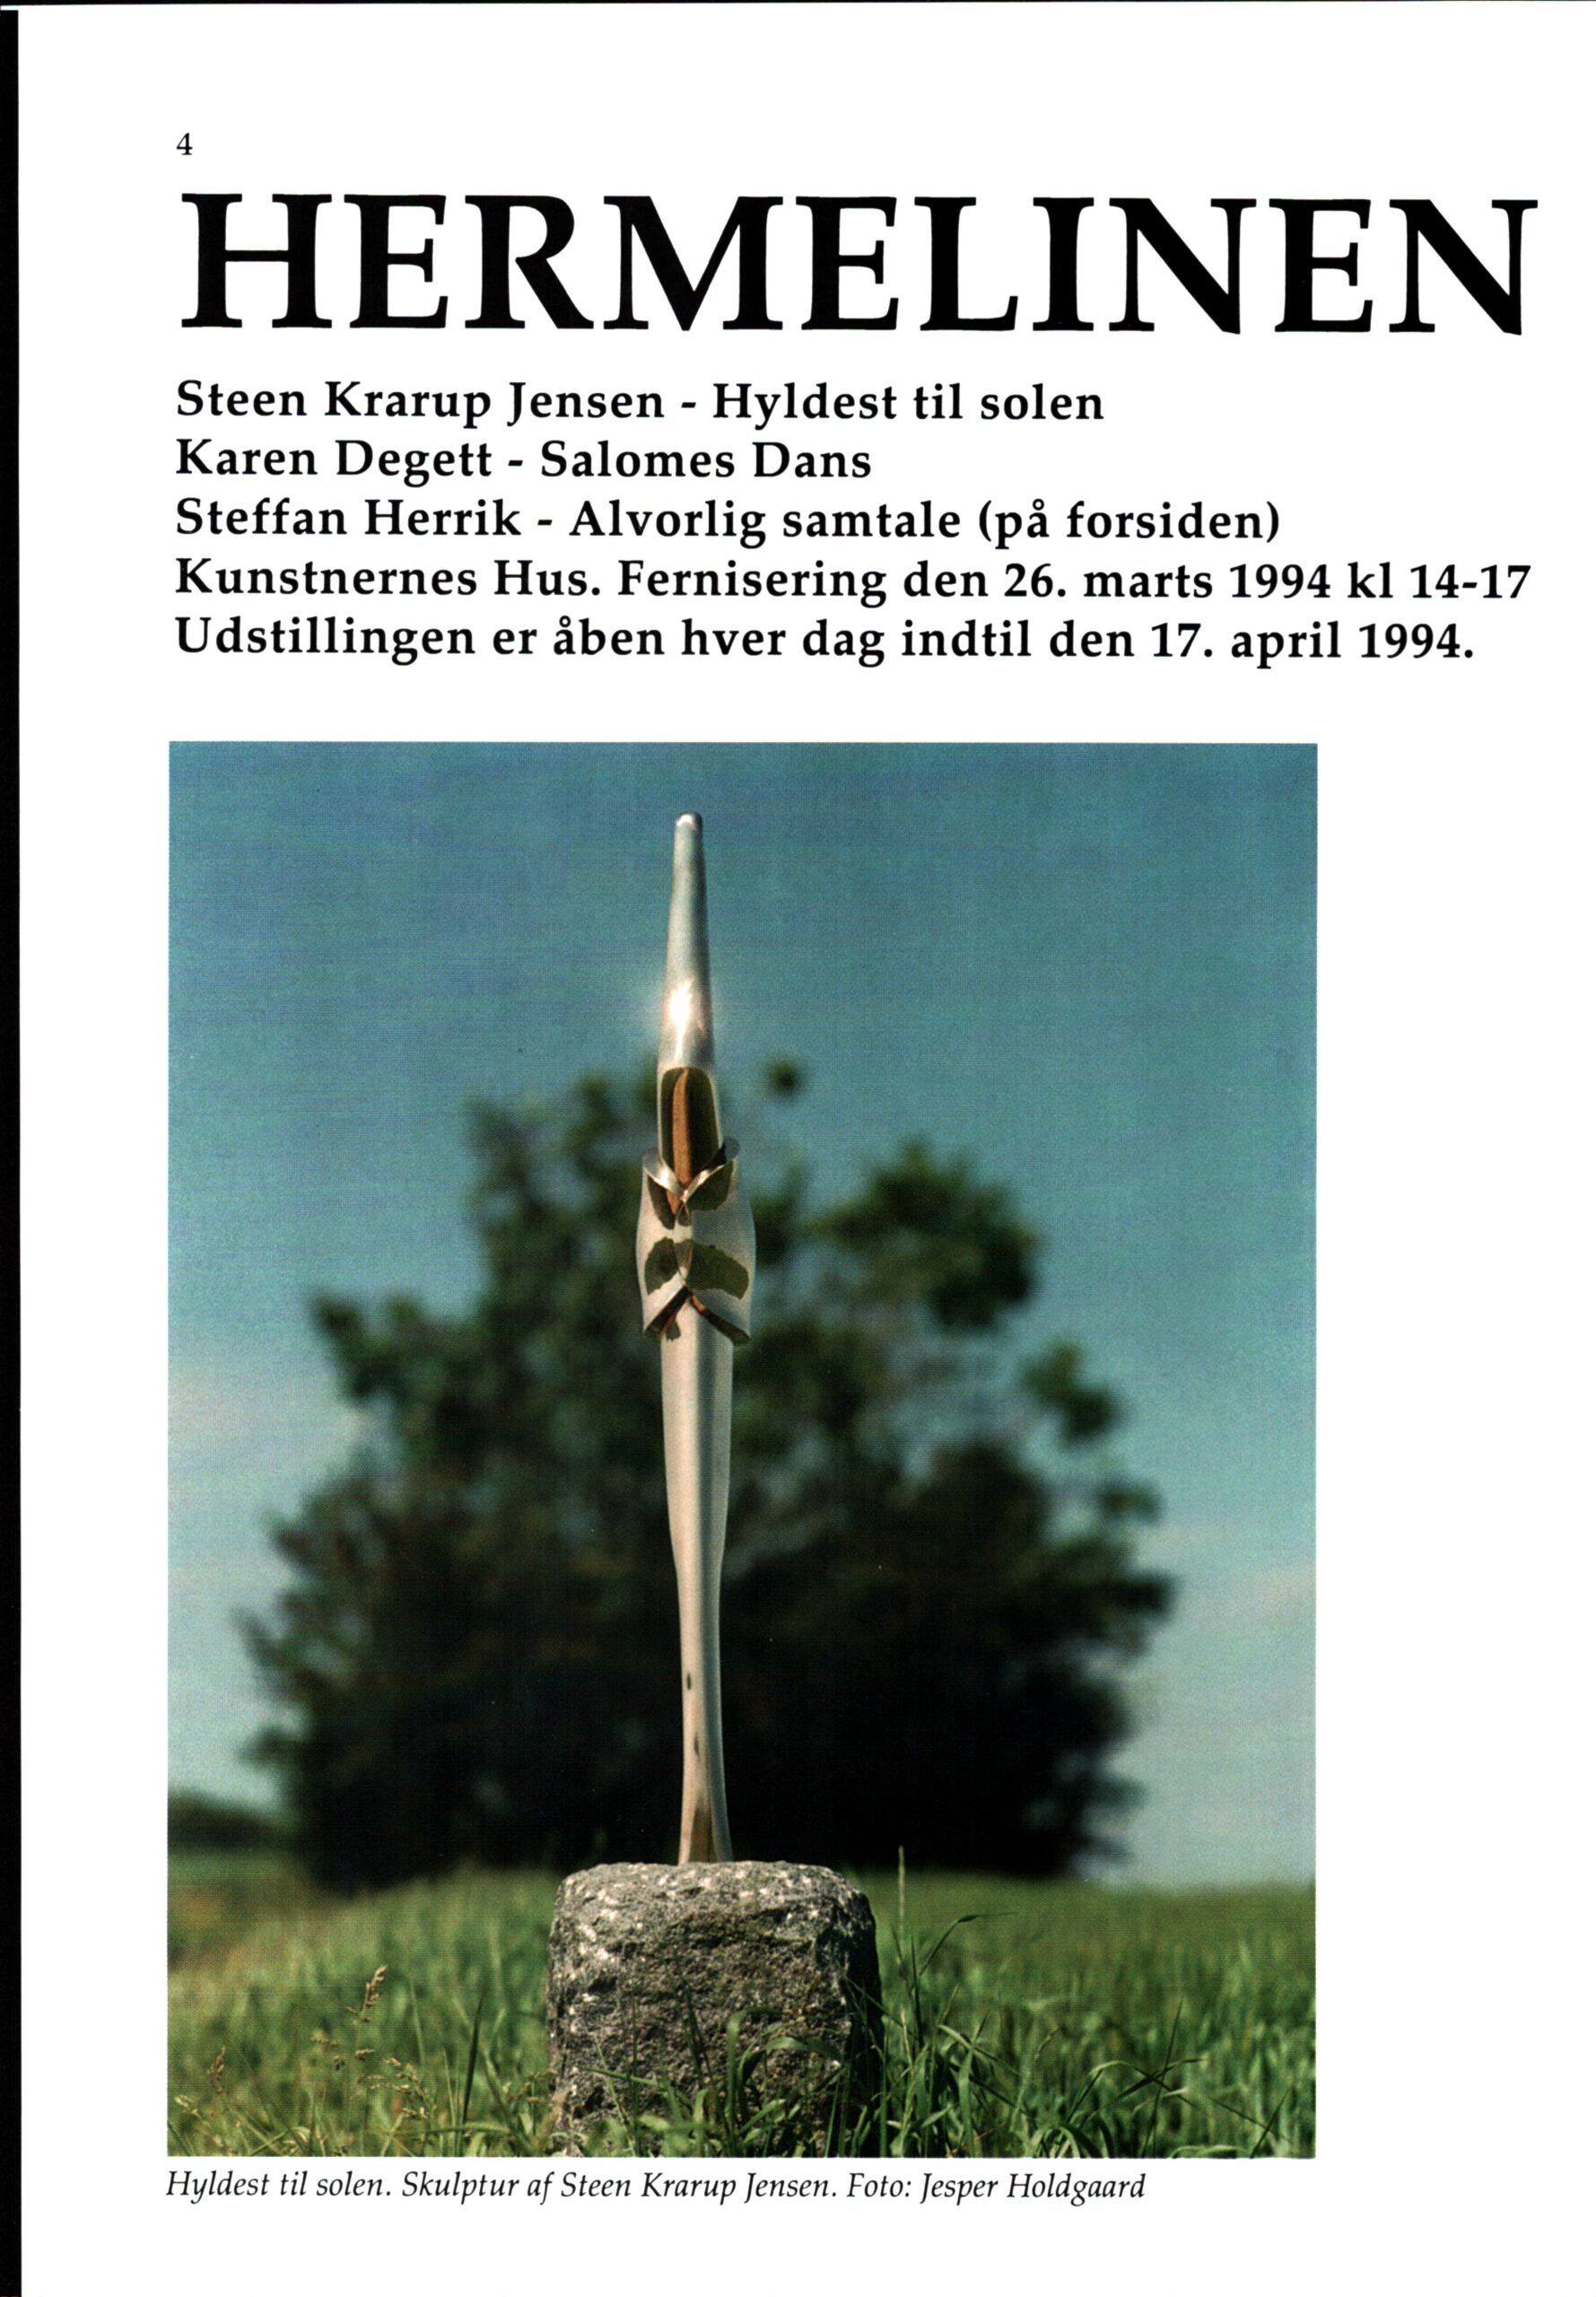 Hermelinen fælder. Kunstnernes Hus, Århus 1994. Tidsskriftet Kunst, nr 2.